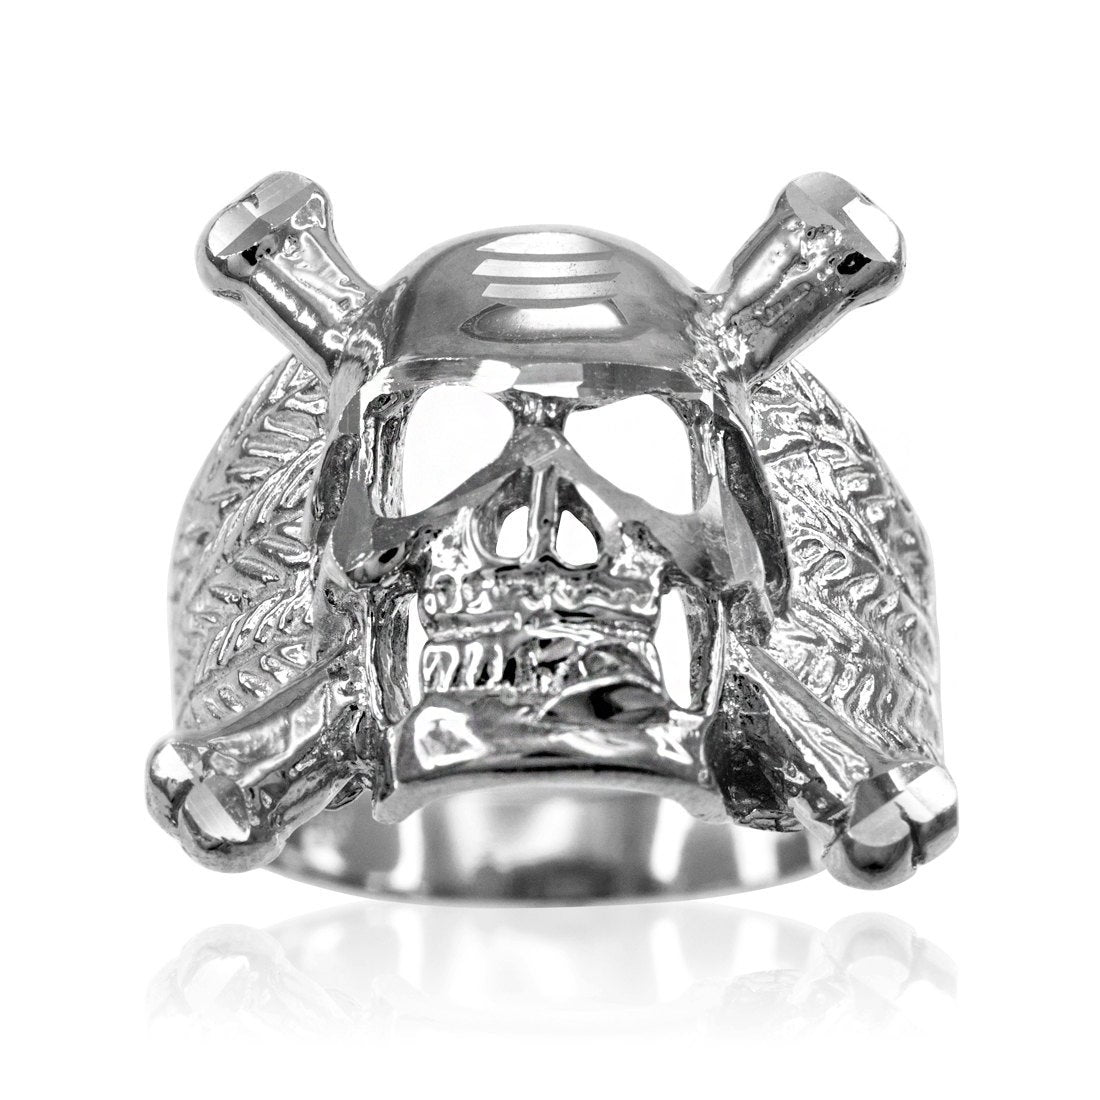 Sterling Silver Biker Ring Skull and Bones Men's Chopper Ring Karma Blingz